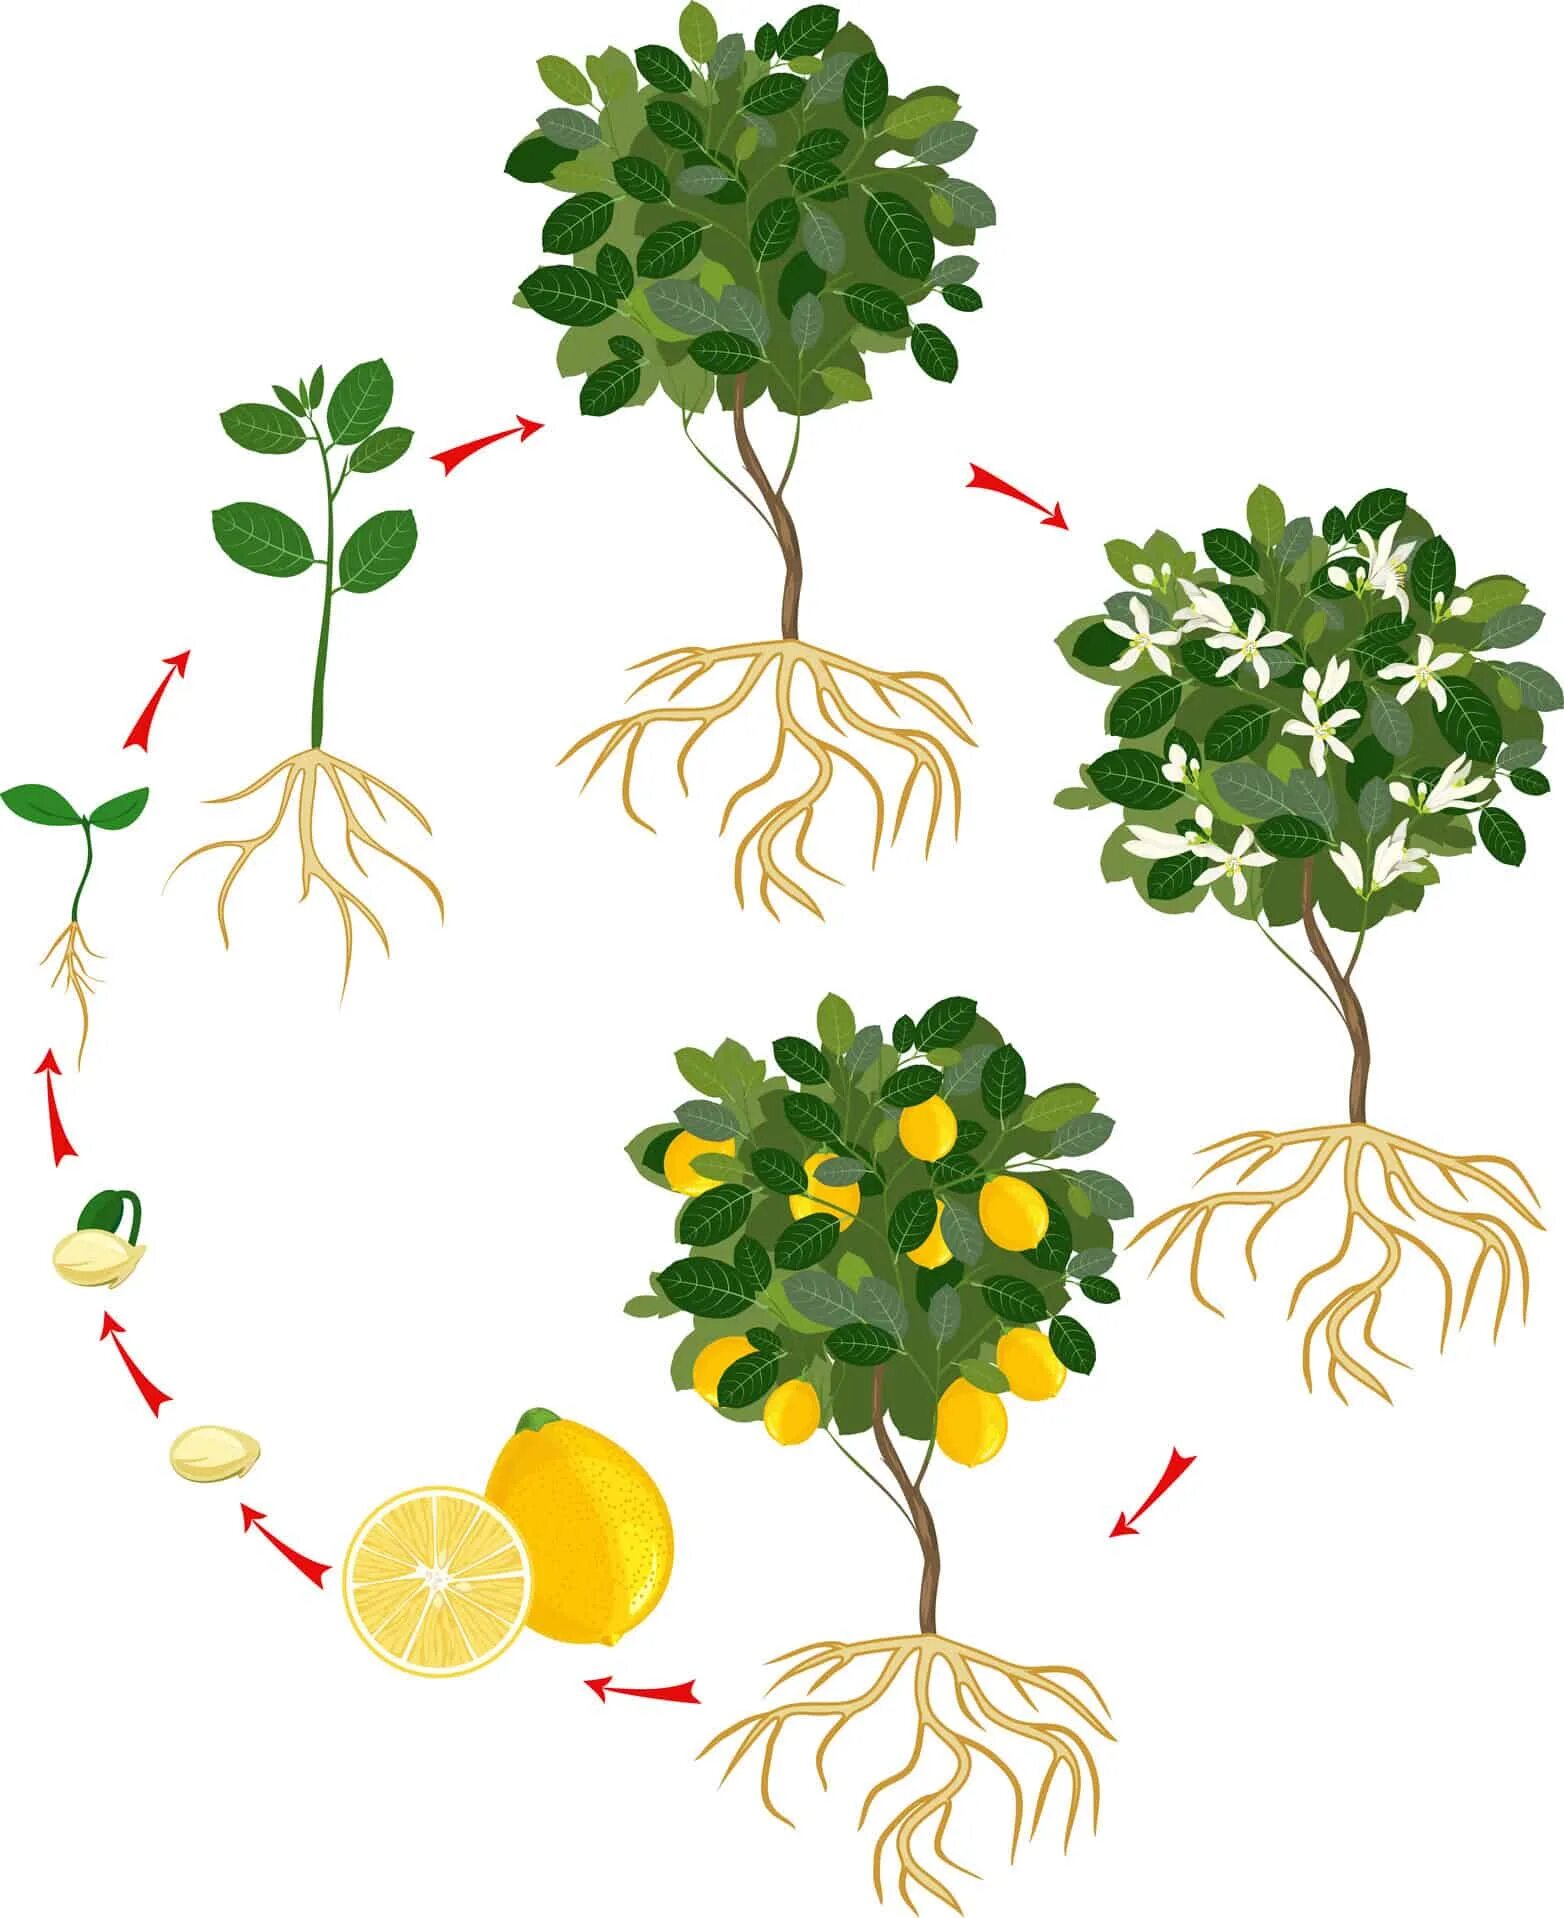 Лимонной дерево цикл. Жизненный цикл дерева. Этапы роста лимонного дерева. Цикл жизни растений.